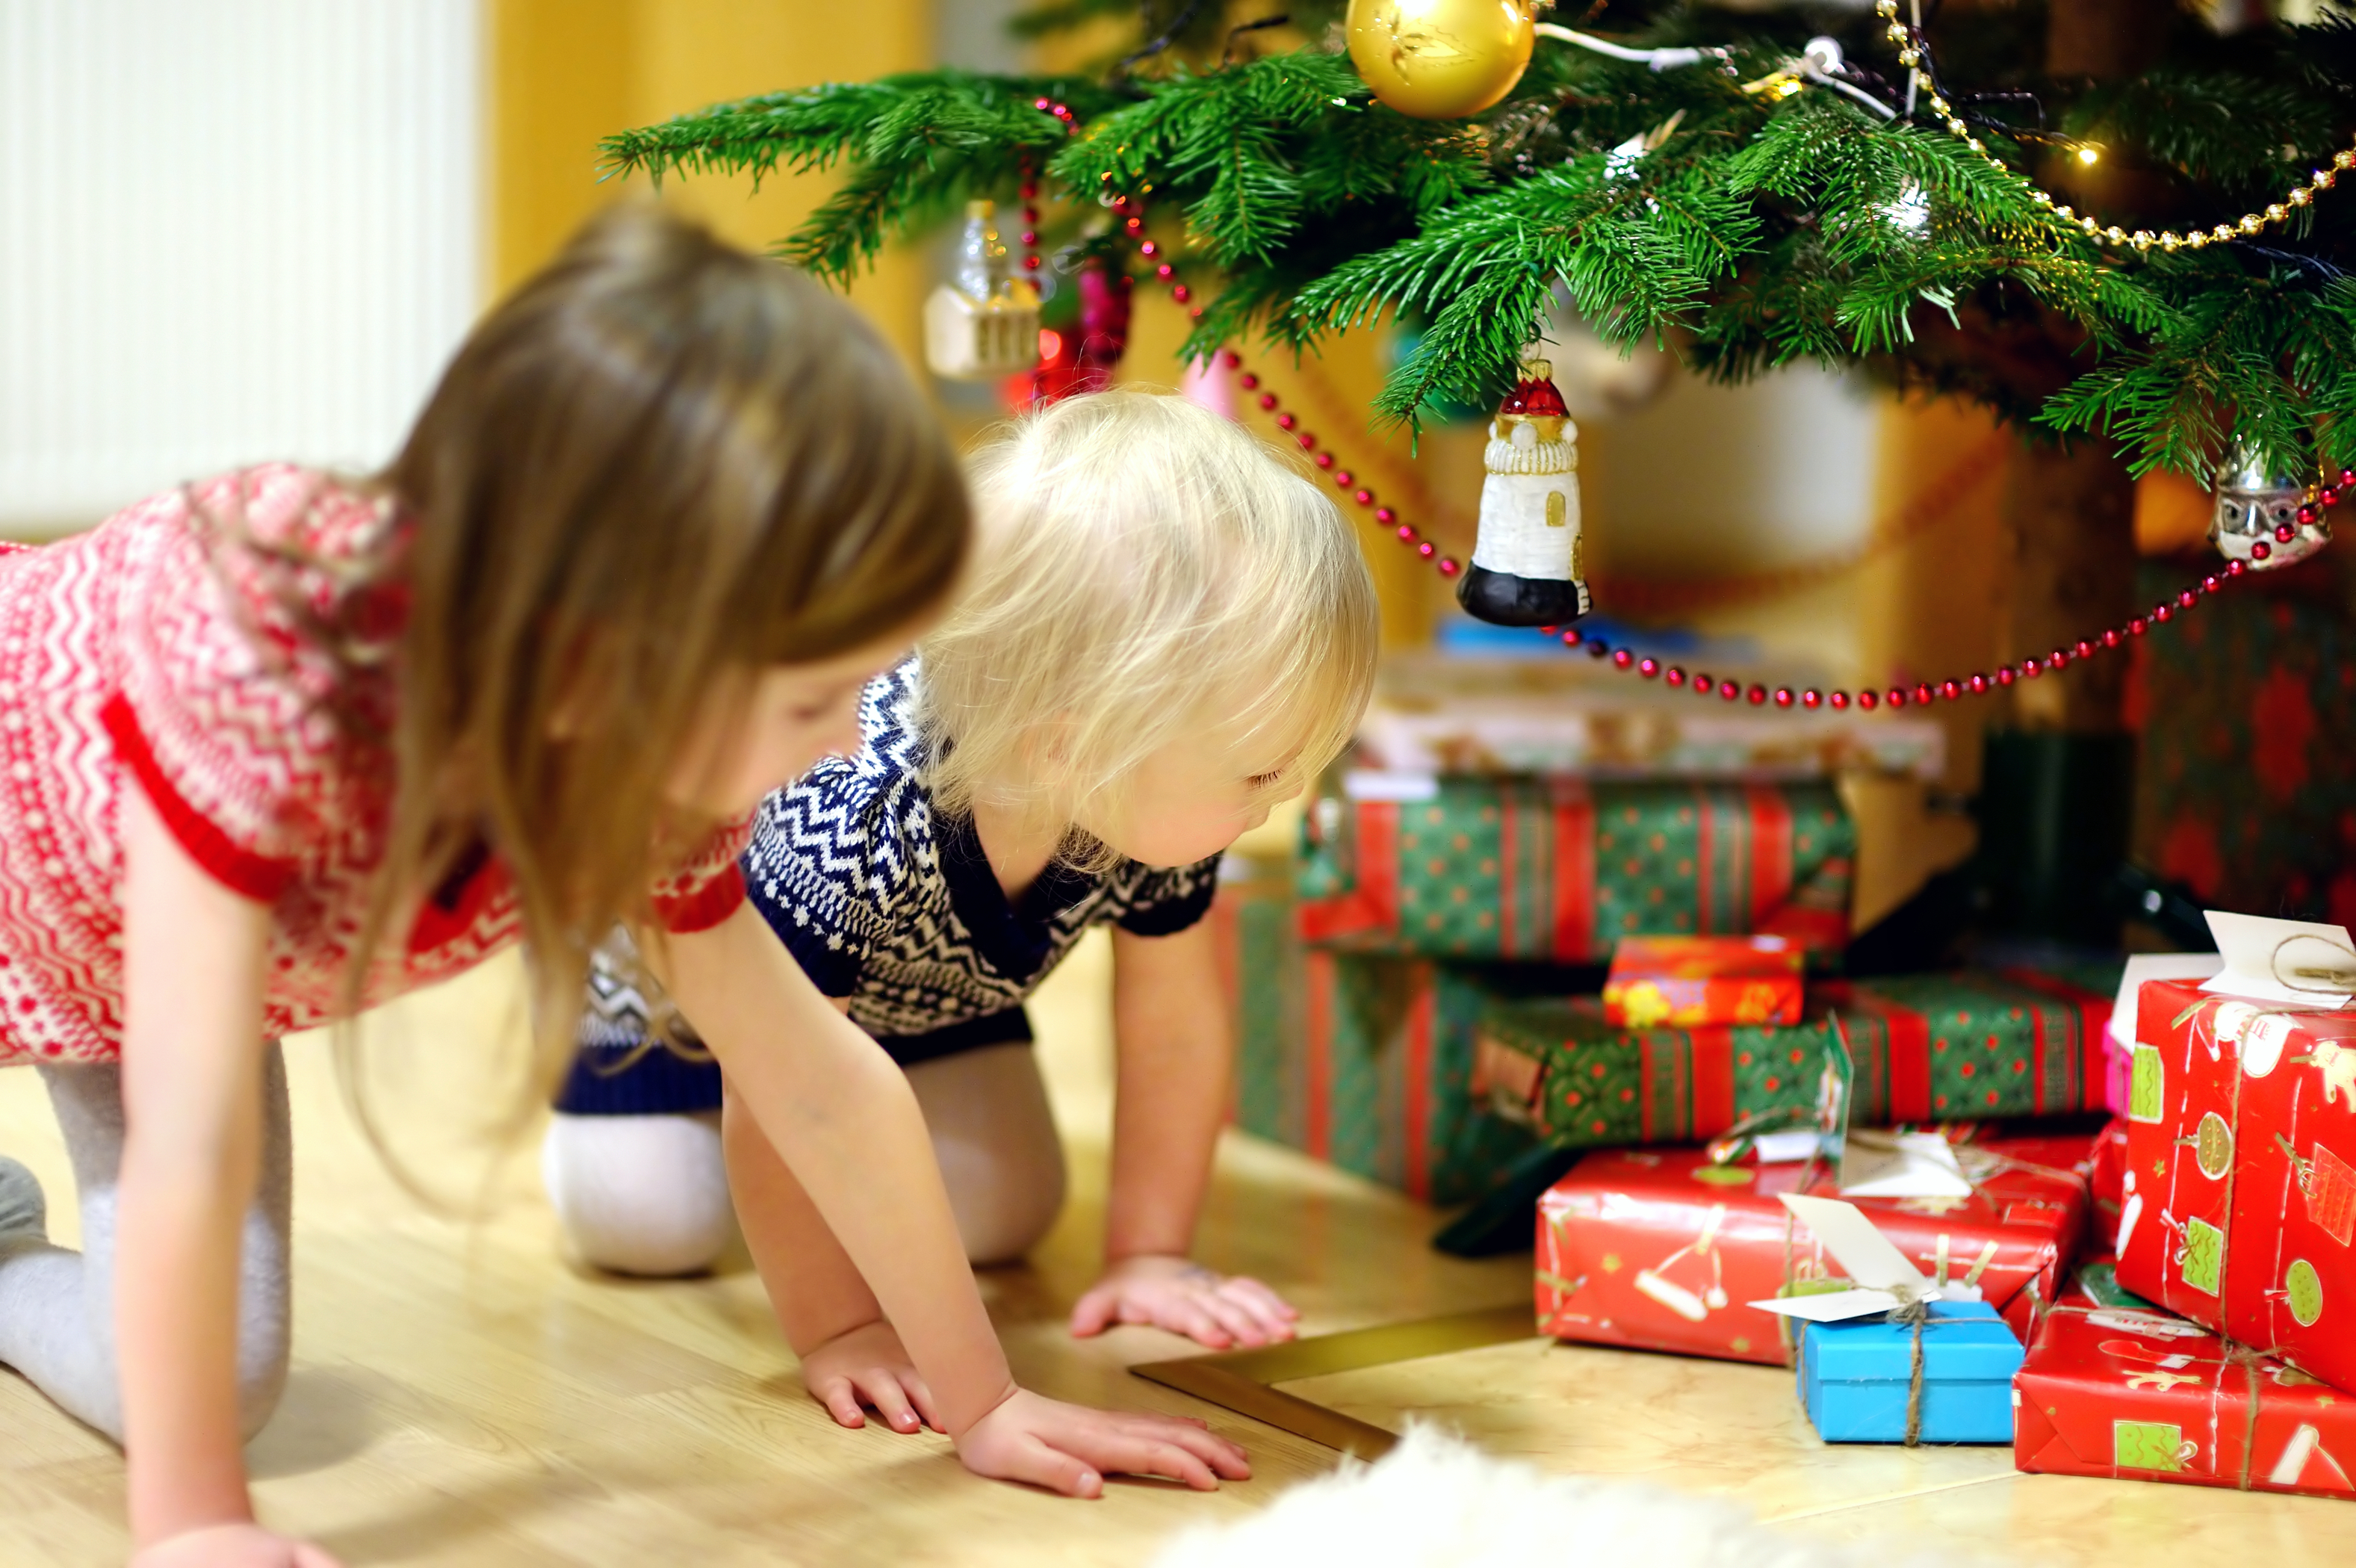 Deux petites sœurs à la recherche de cadeaux sous un sapin de Noël | Source : Shutterstock